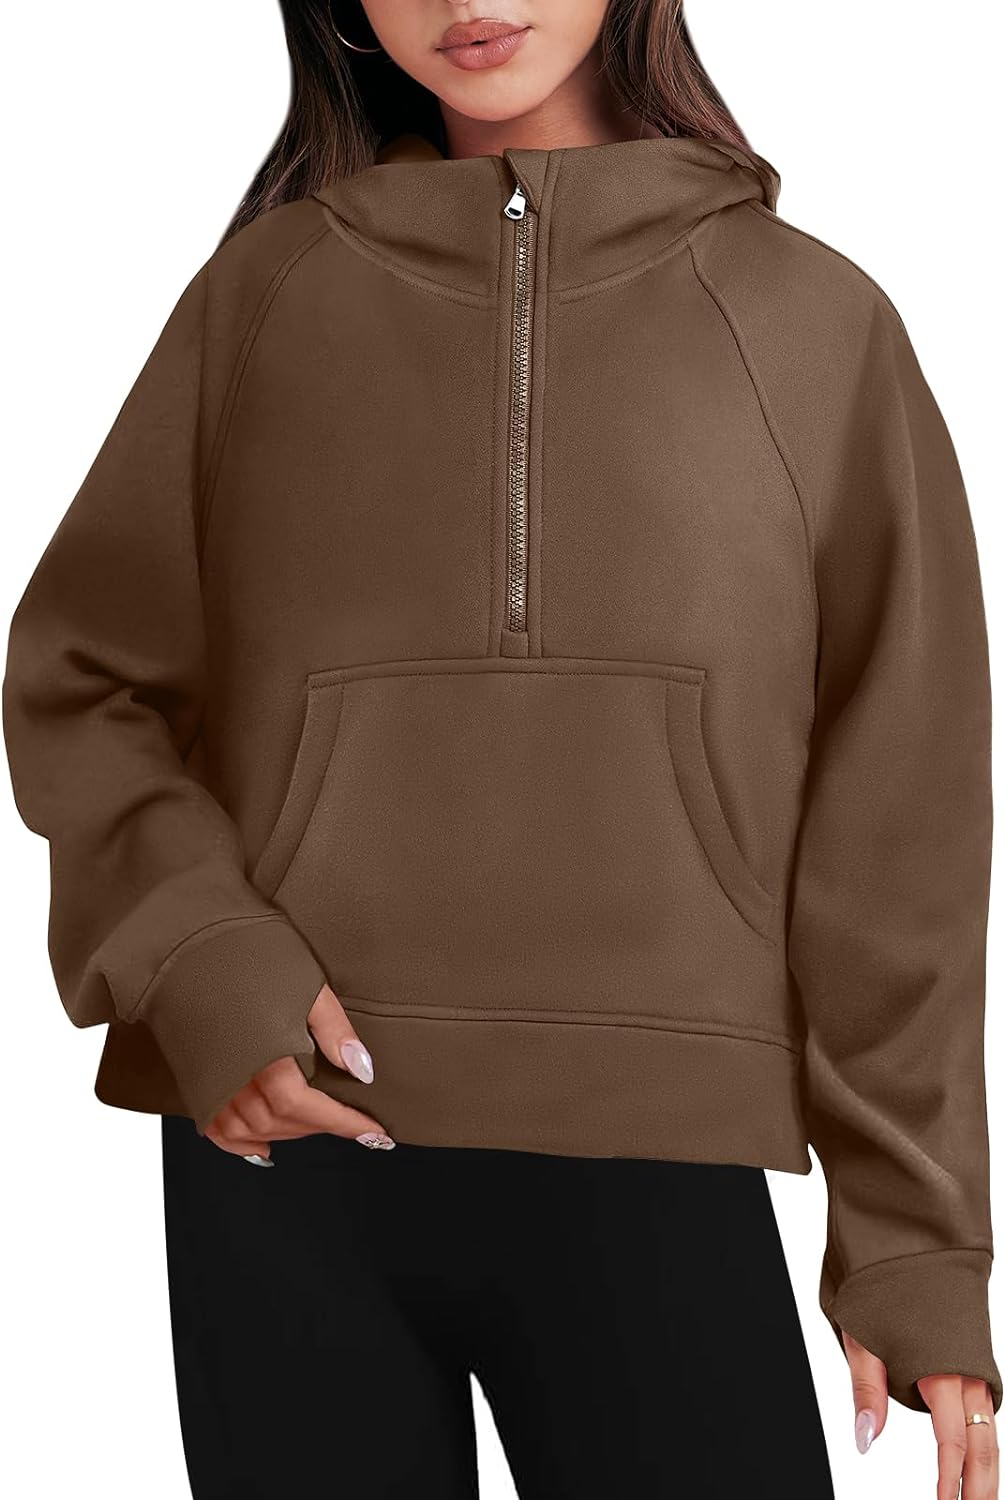 Caracilia Half Zip Sweatshirts Cropped Hoodies Fleece Quarter Zip Up  Pullover To